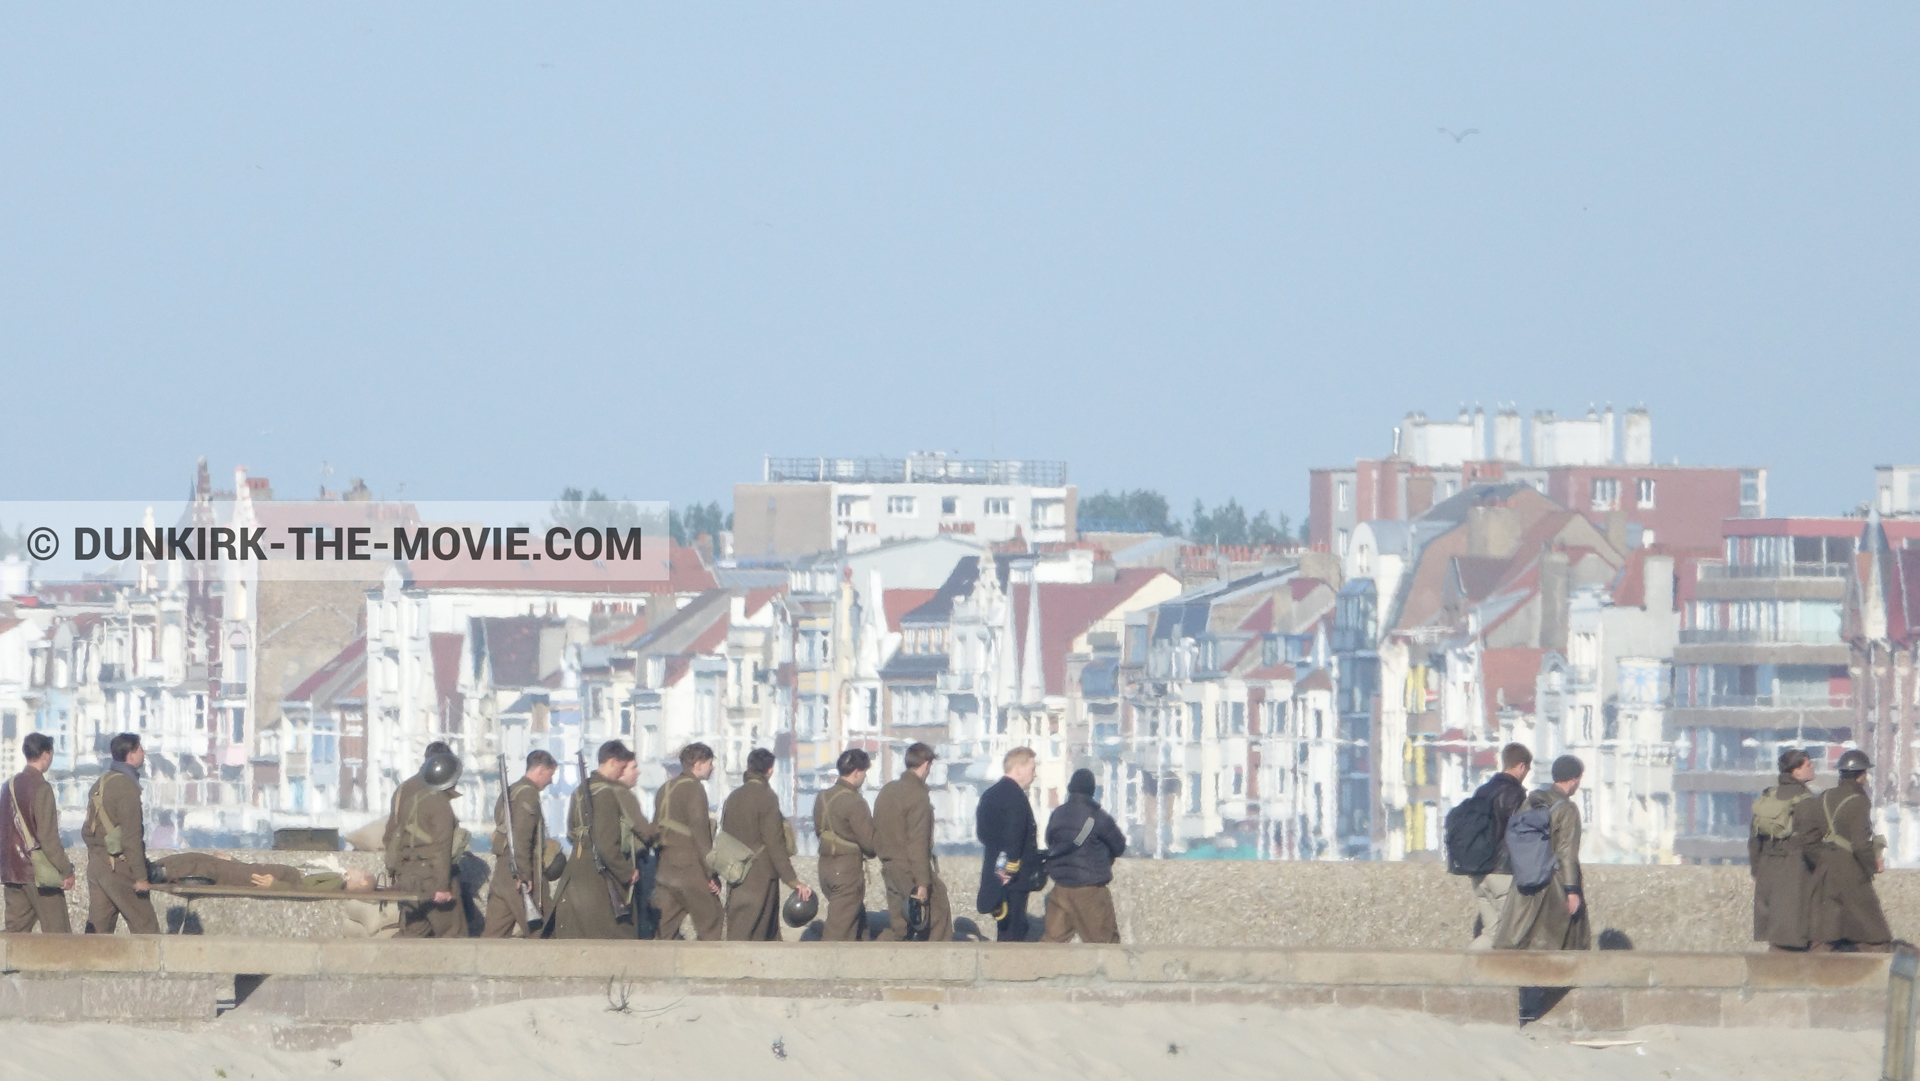 Fotos con extras, muelle del ESTE, Kenneth Branagh, Malo les Bains,  durante el rodaje de la película Dunkerque de Nolan